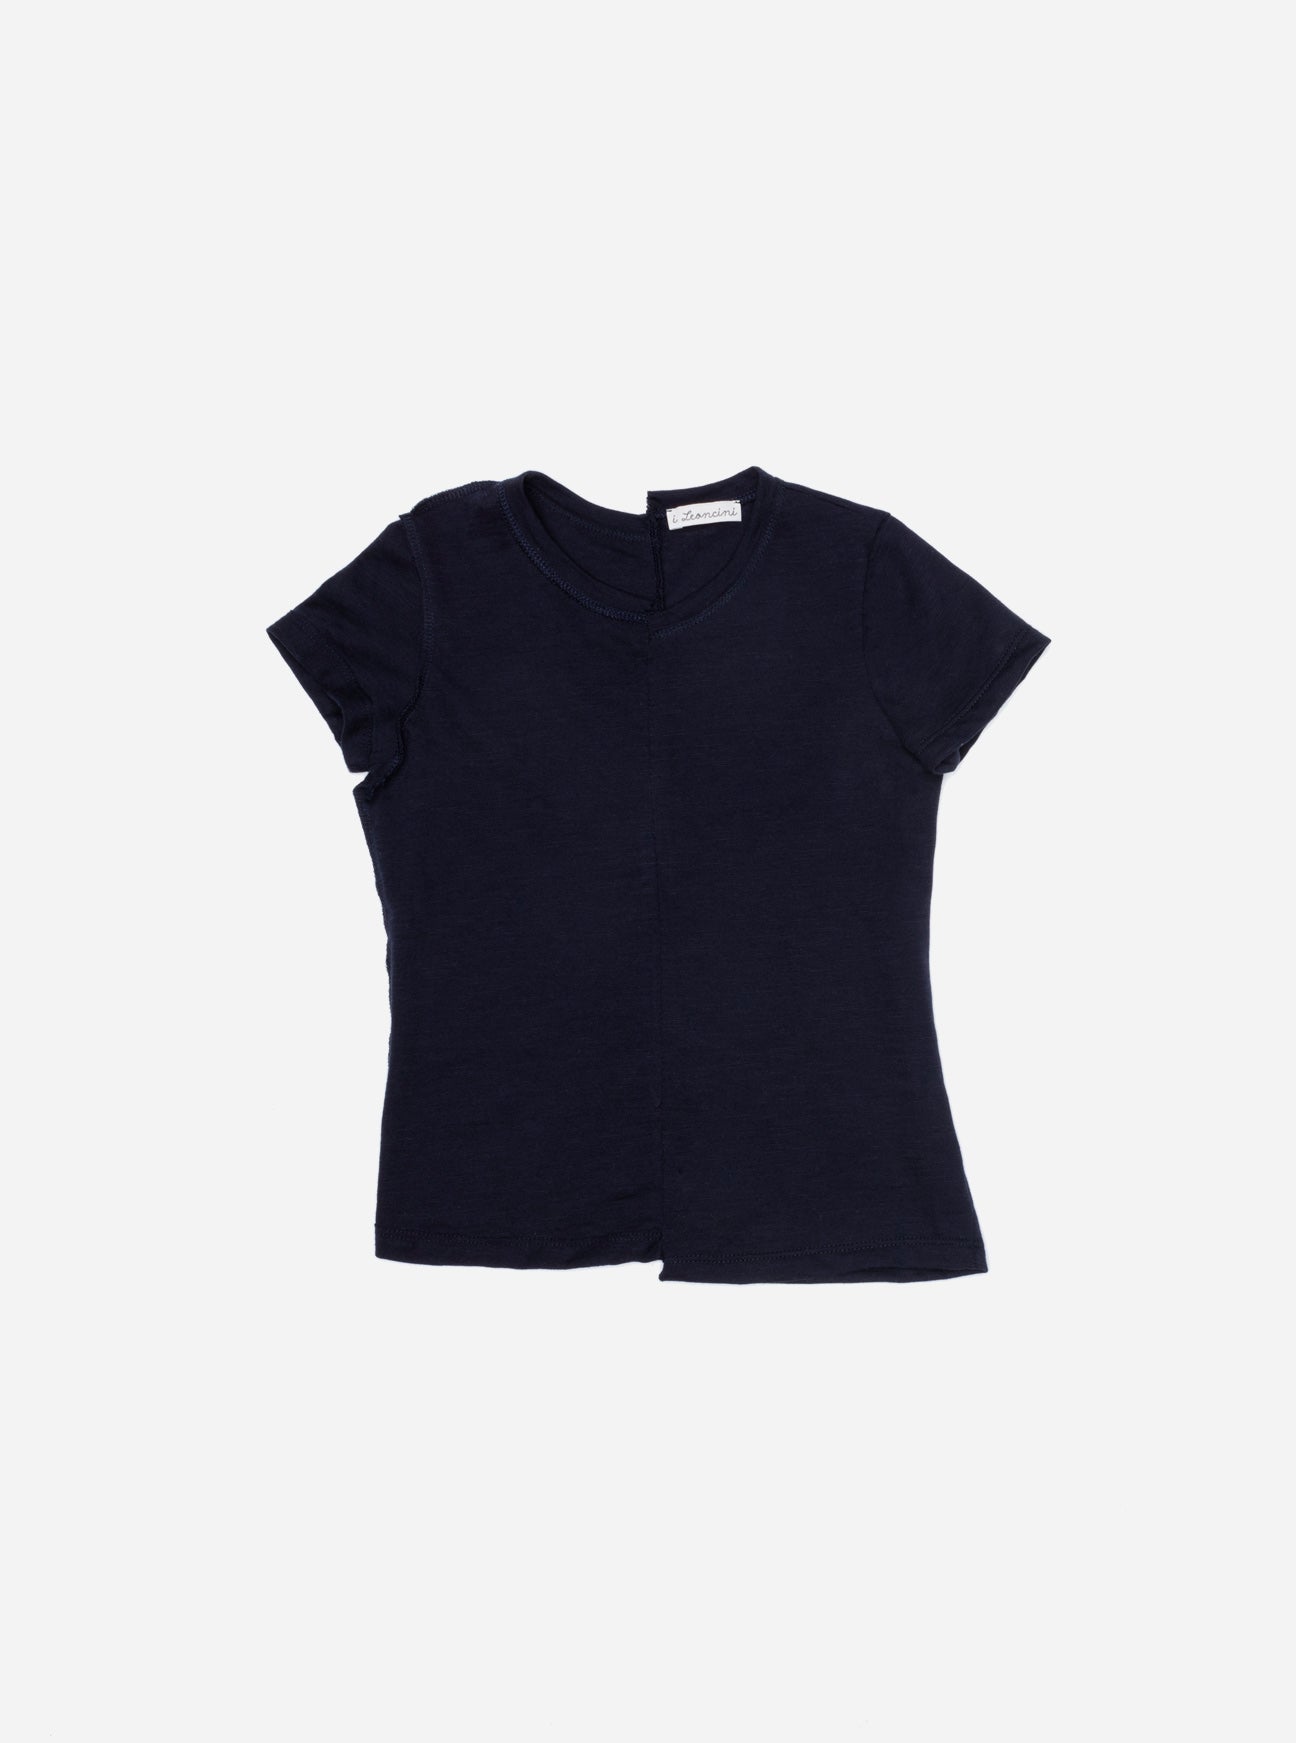 T-shirt COCA Blu-OUTLET T-shirt, Camicie, Top e Canotte-I Leoncini Shop